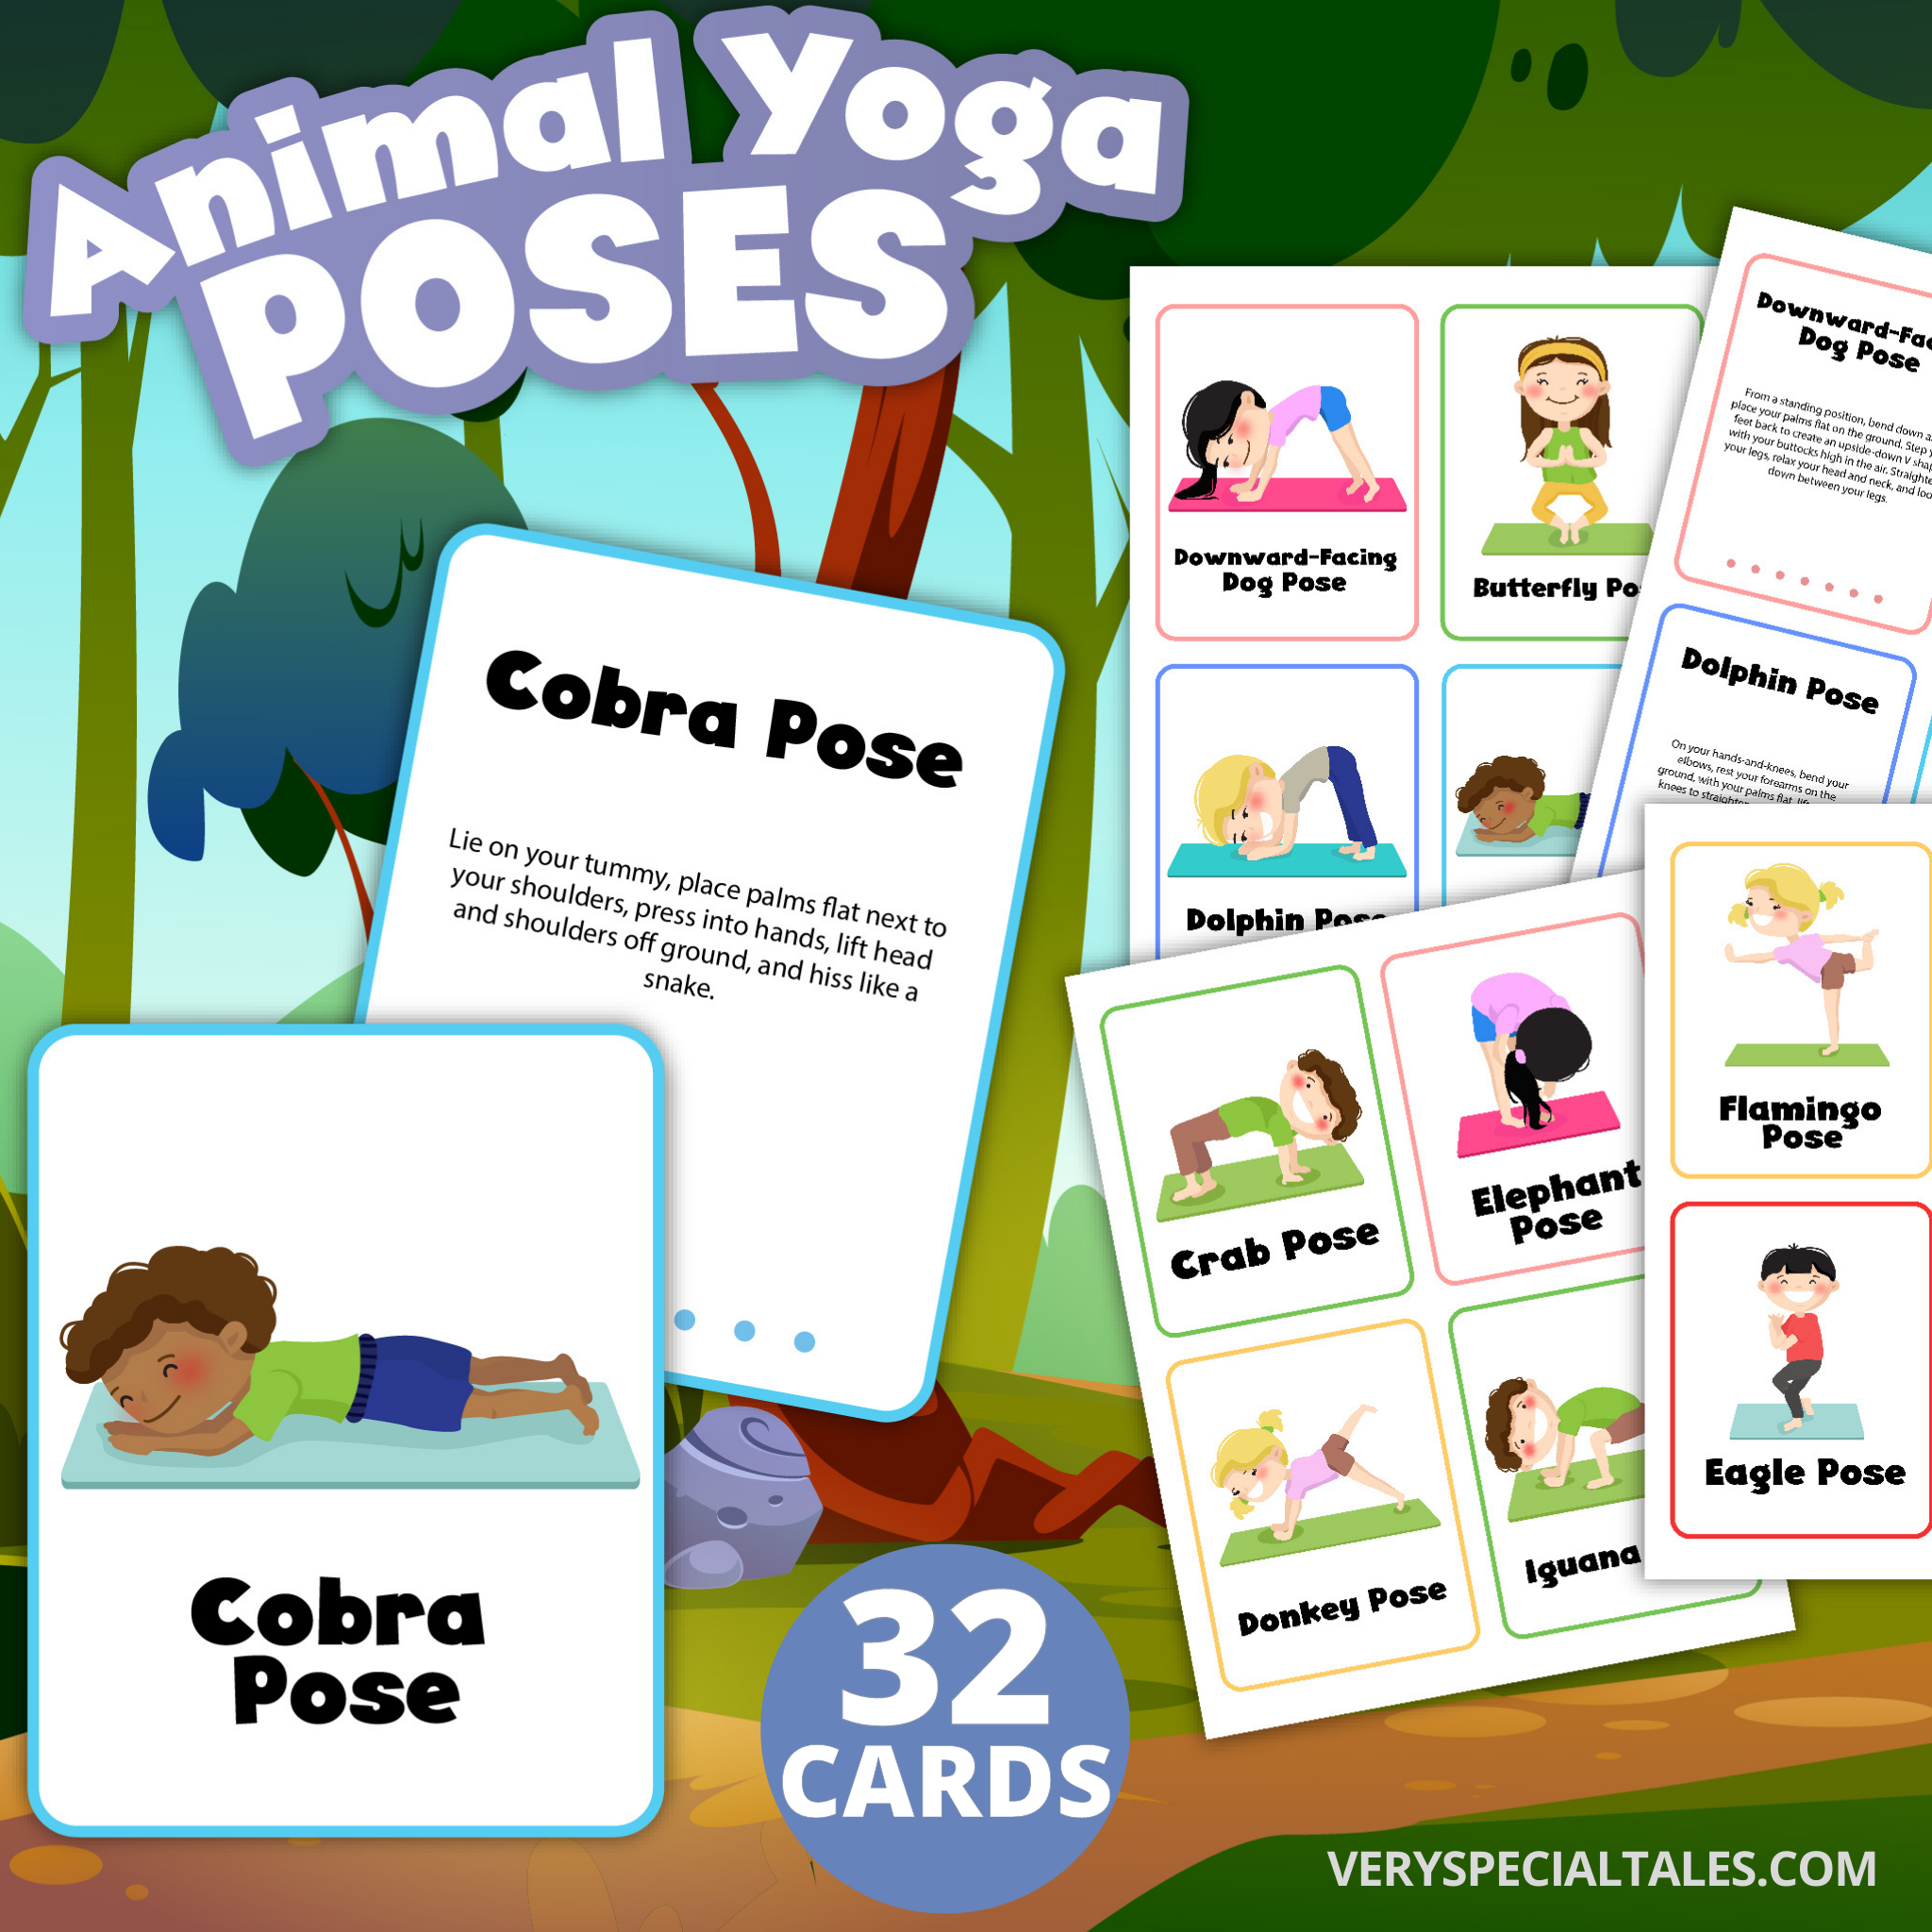 ABC Yoga for Kids : Animal Yoga Poses | [VIDEO]